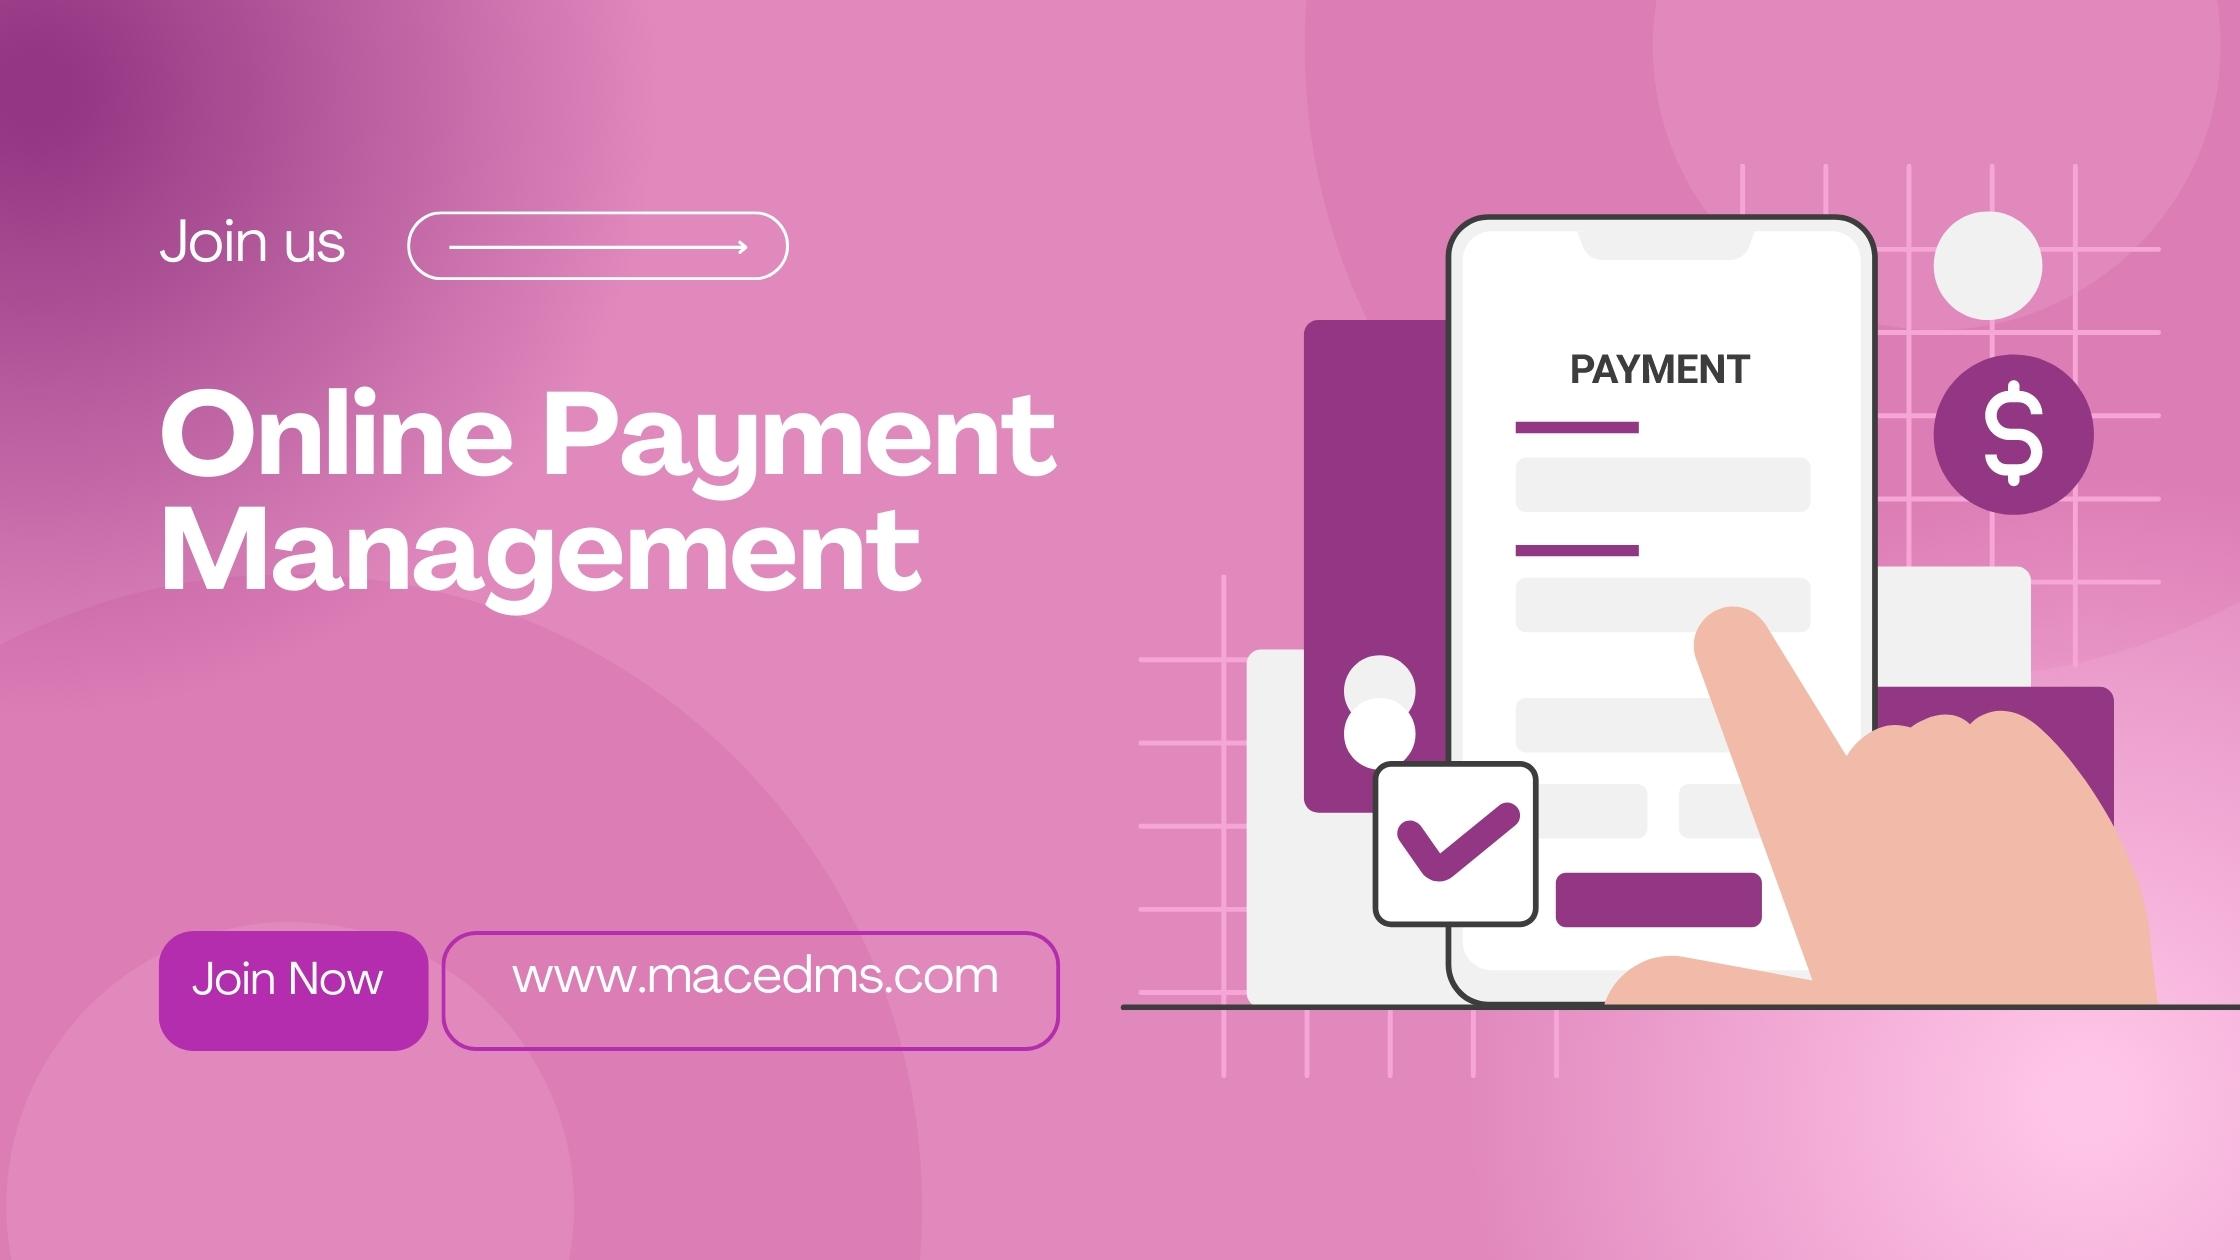 Online Payment Management